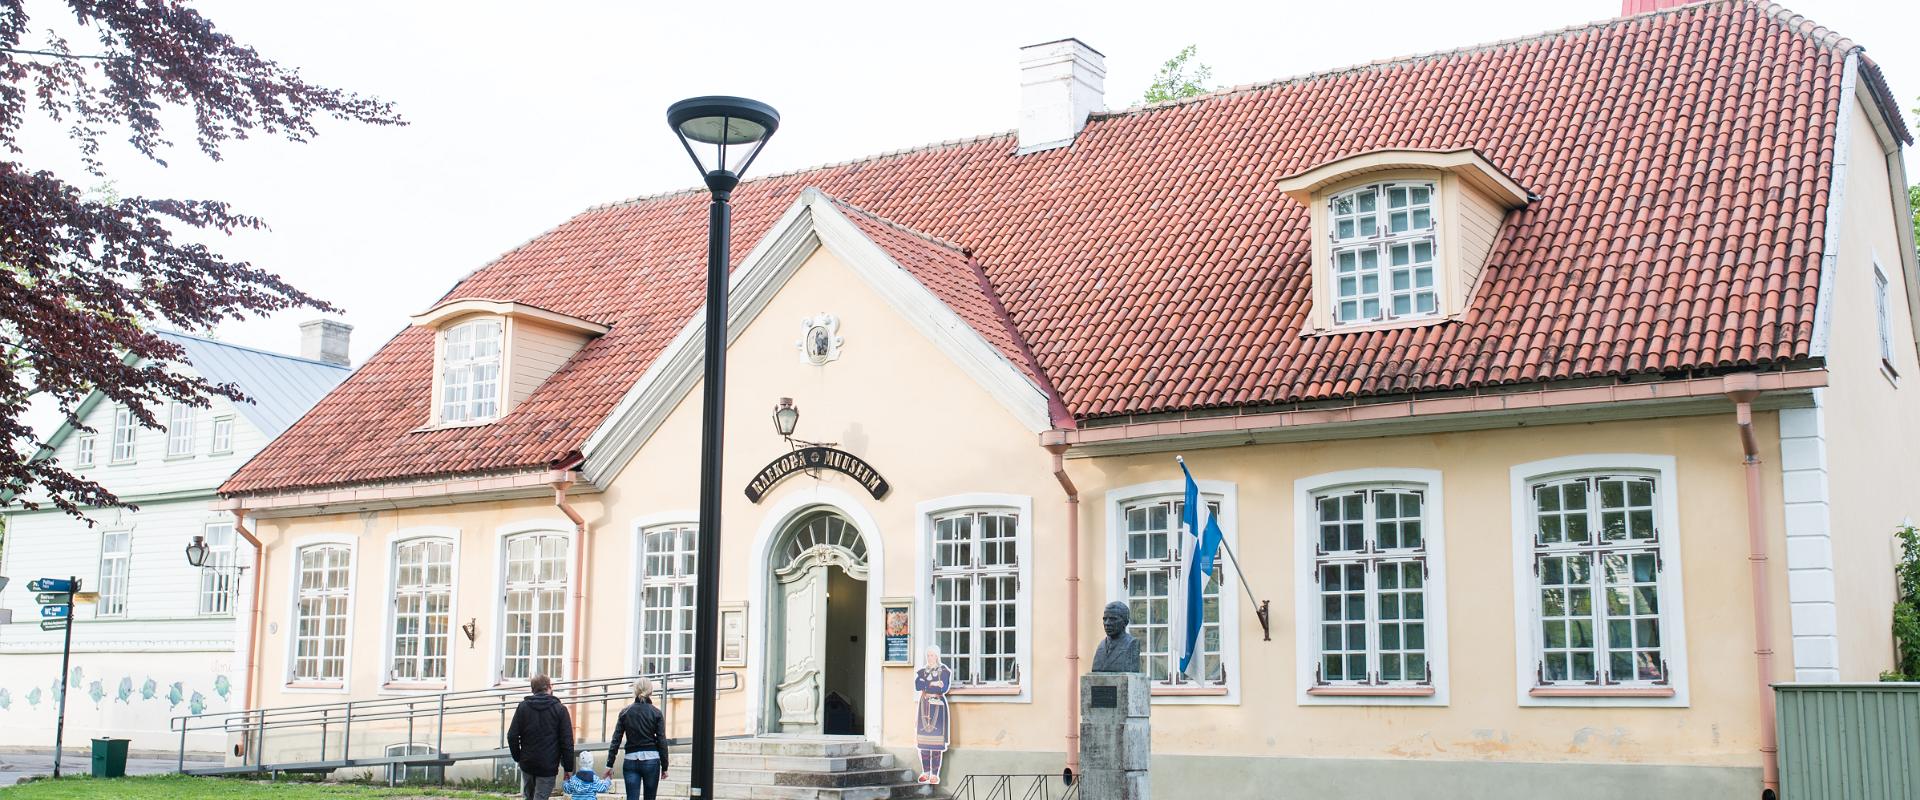 Haapsalu Town Hall